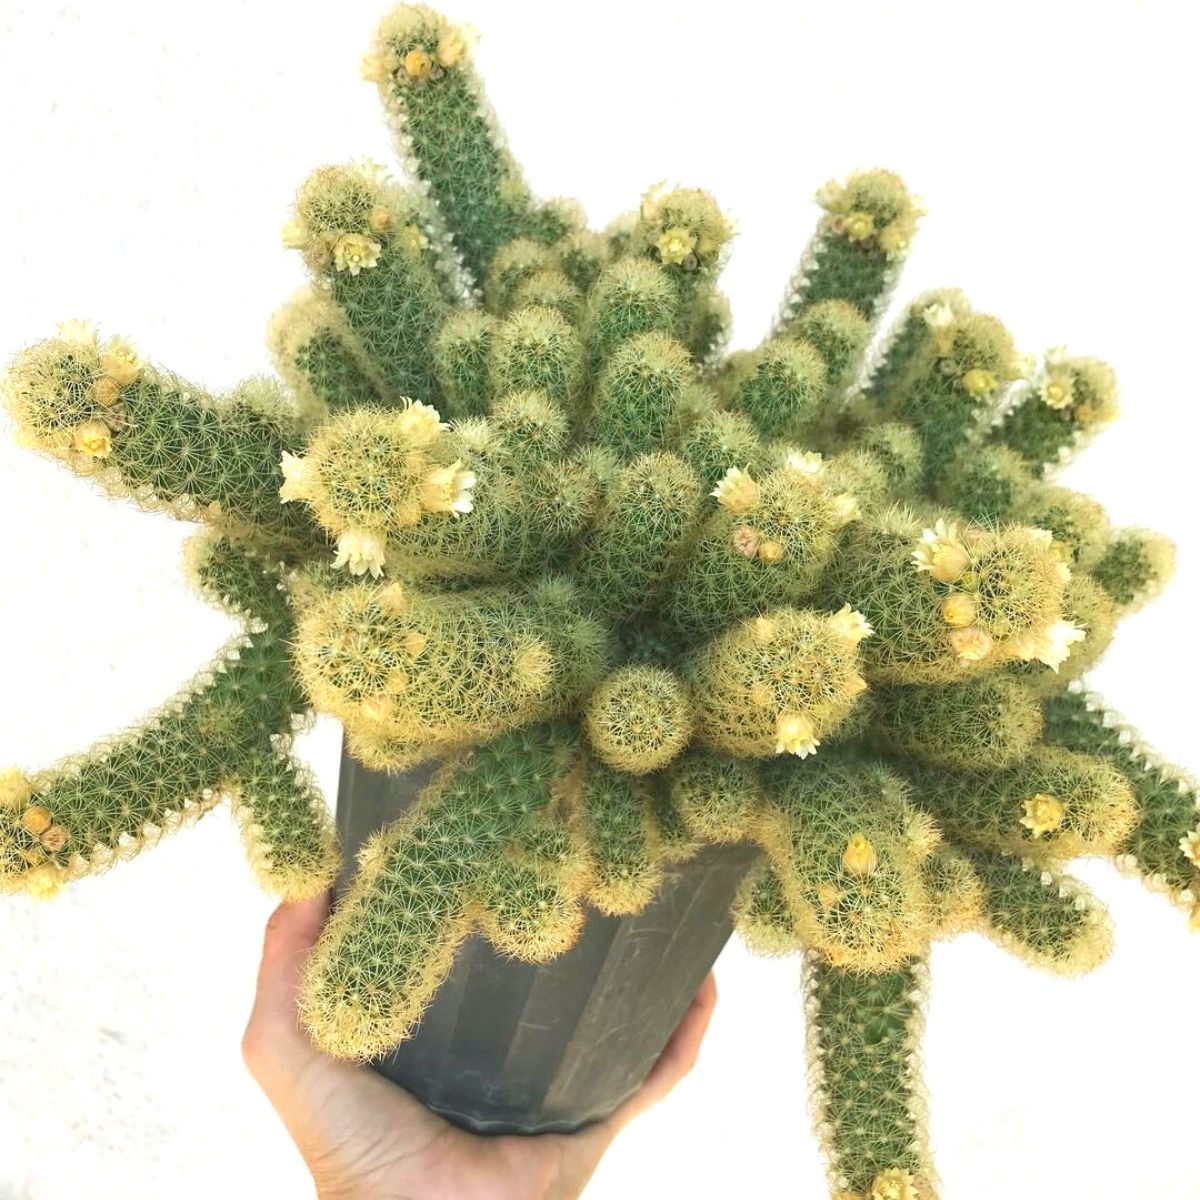 Ladyfinger cactus in full bloom